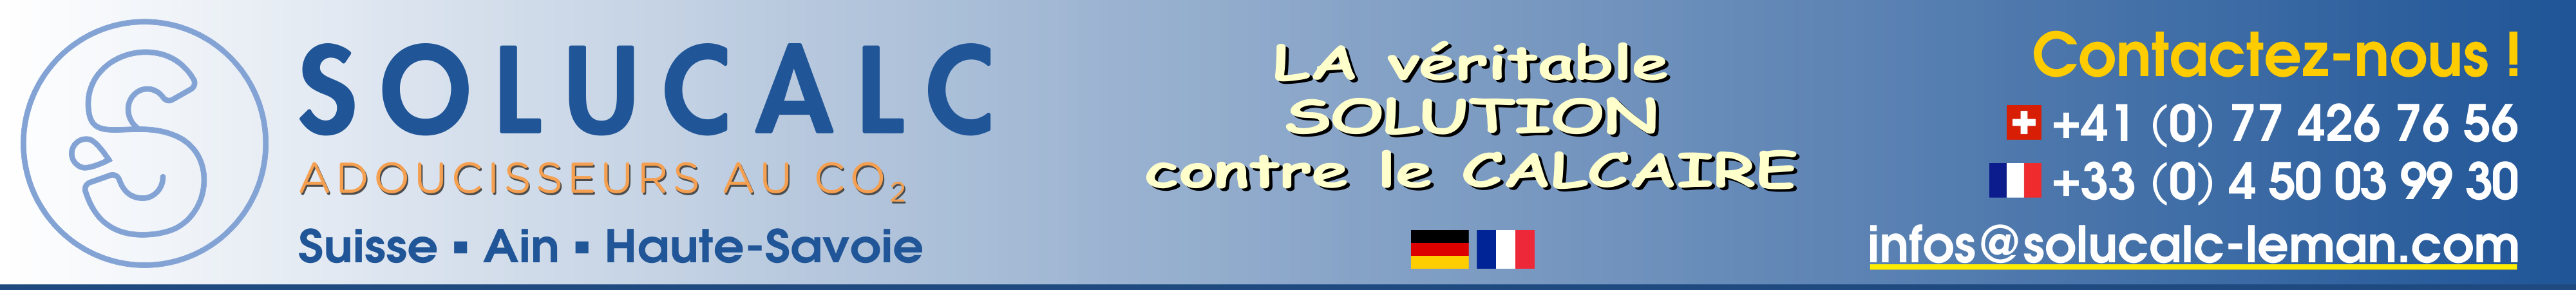 Adoucisseur d'eau au CO2 - SoluCalc - La véritable solution au calcaire 100% efficace - Suisse et Est-France